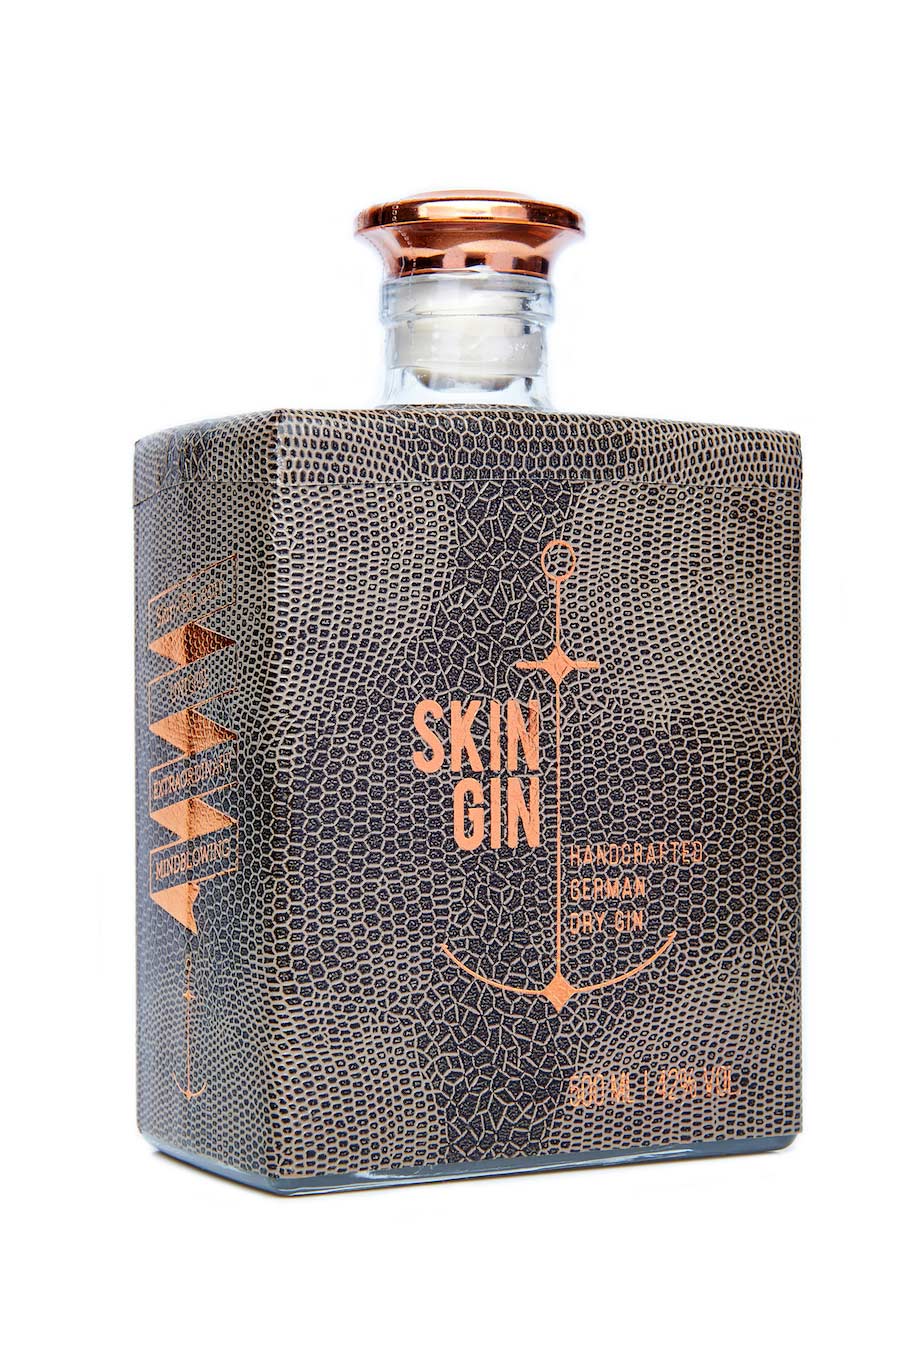 Skin Gin Reptile Edition 42% 0,5l